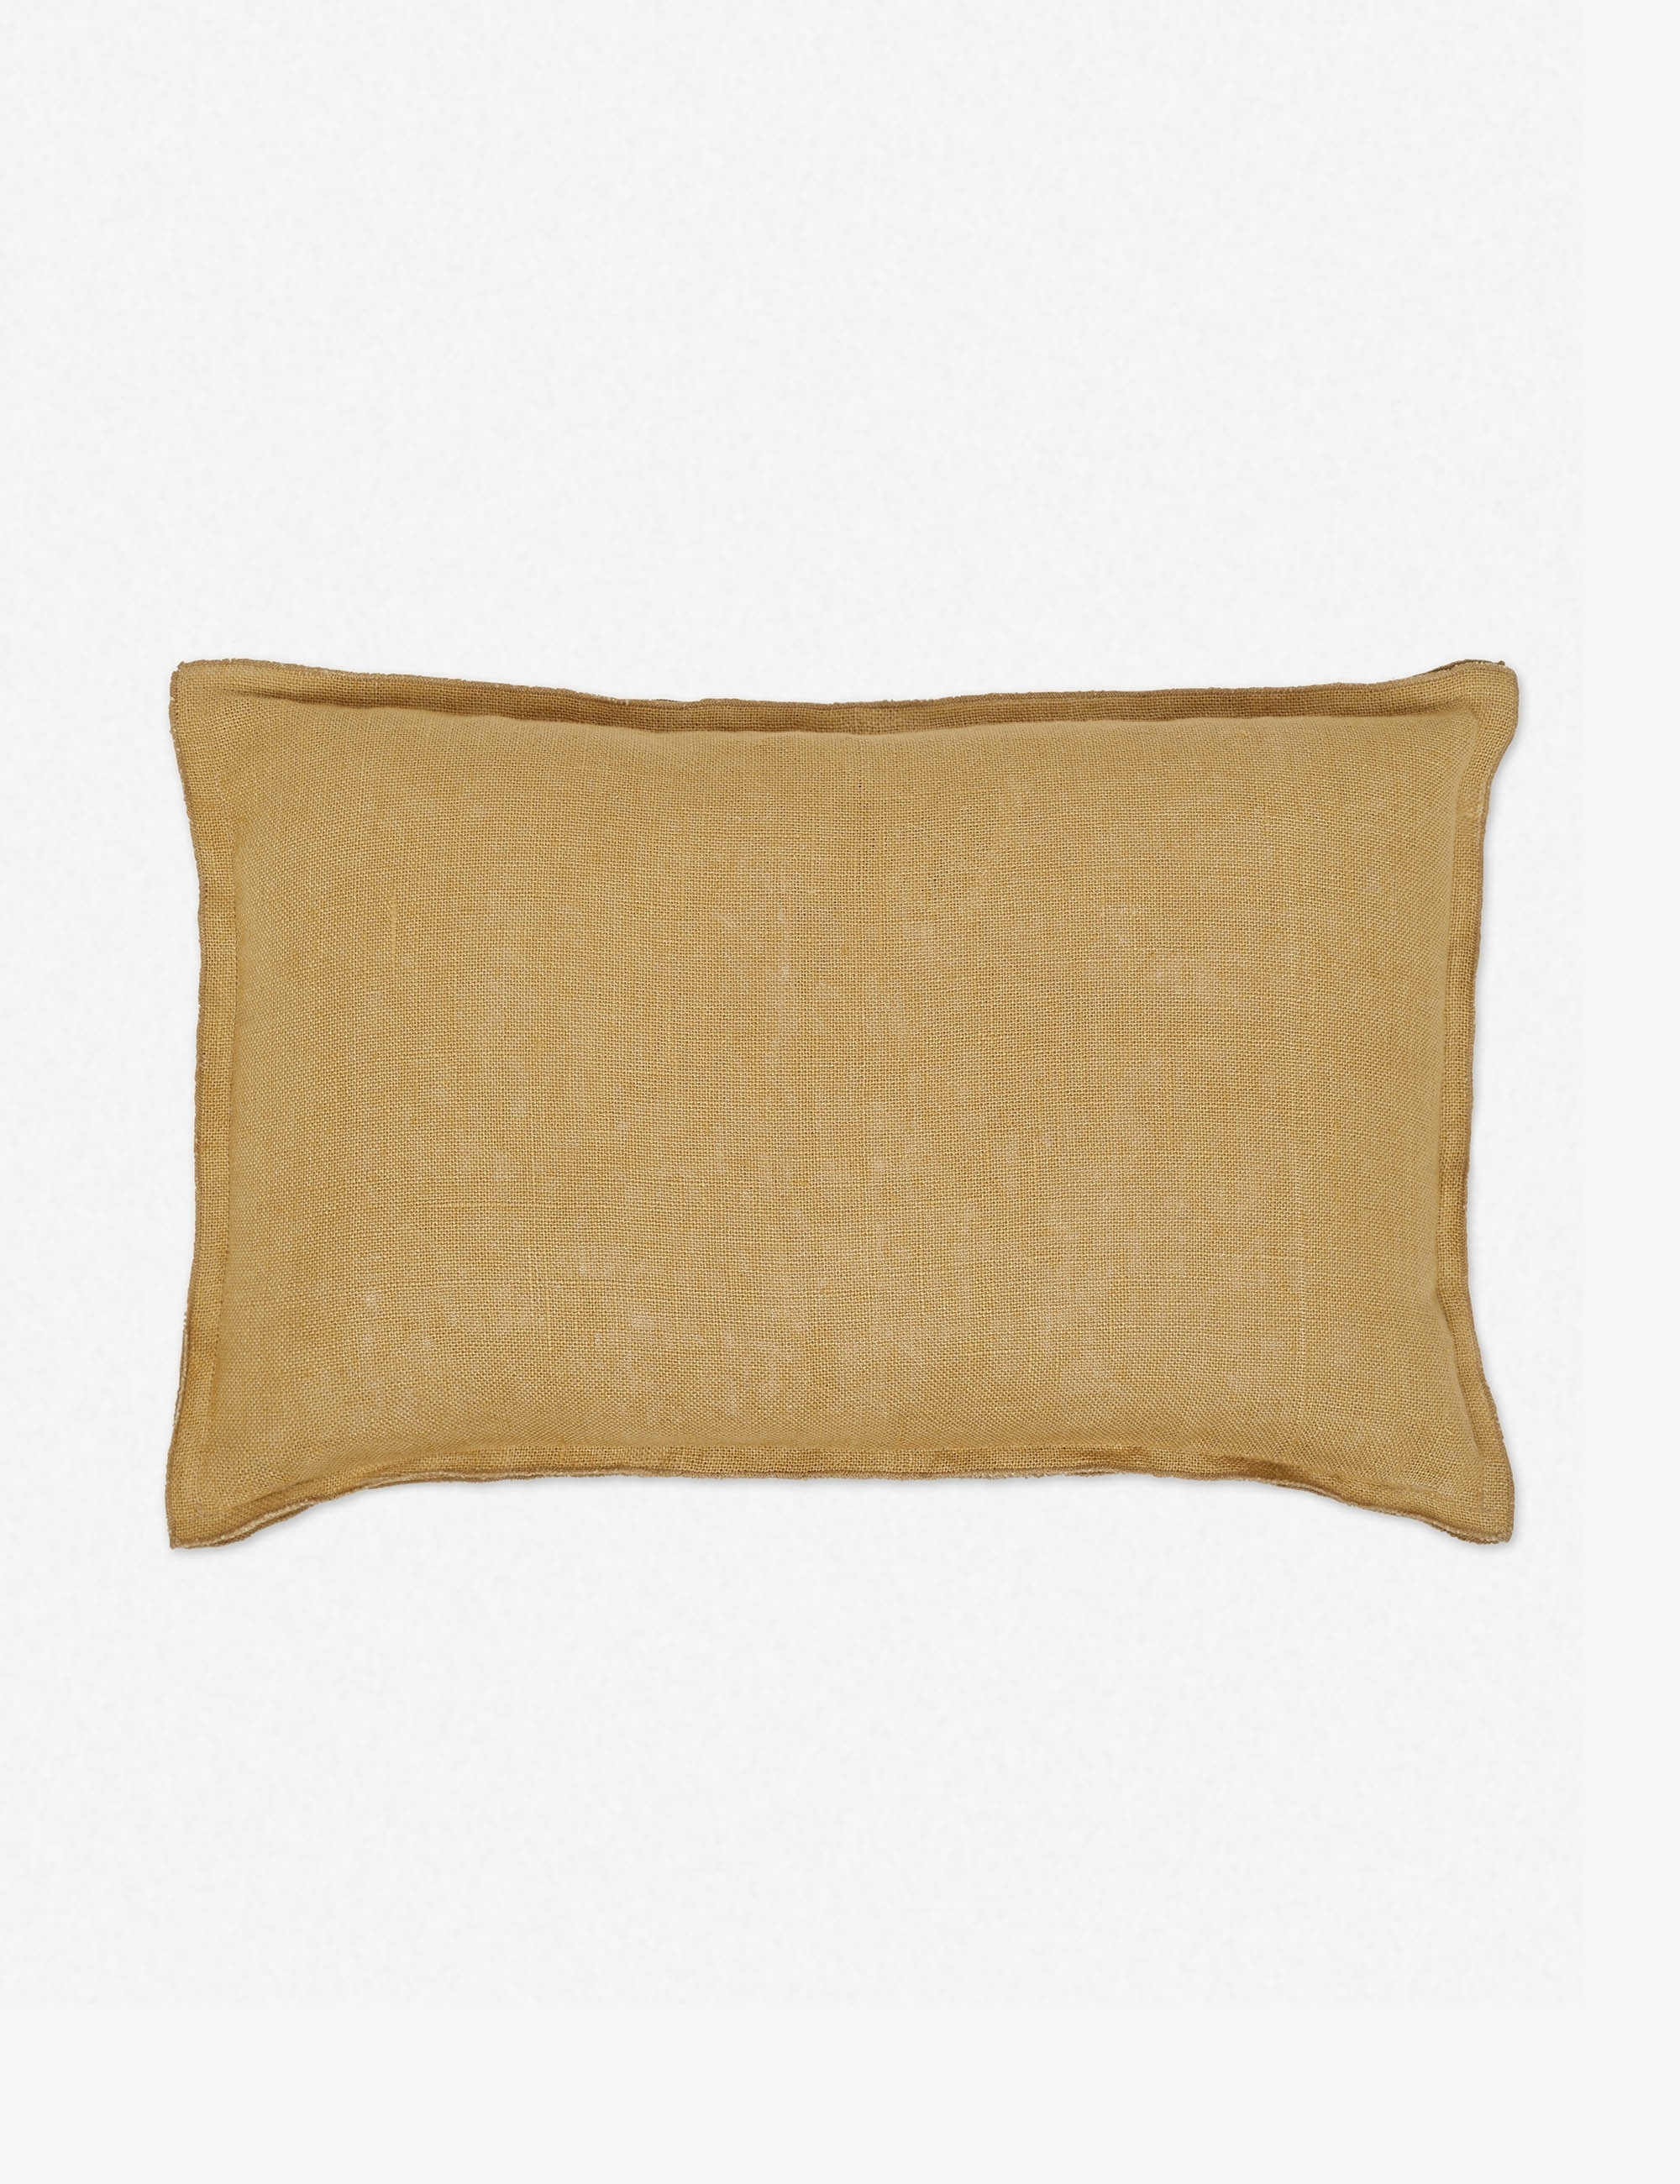 Arlo Linen Lumbar Pillow, Marigold - Image 2